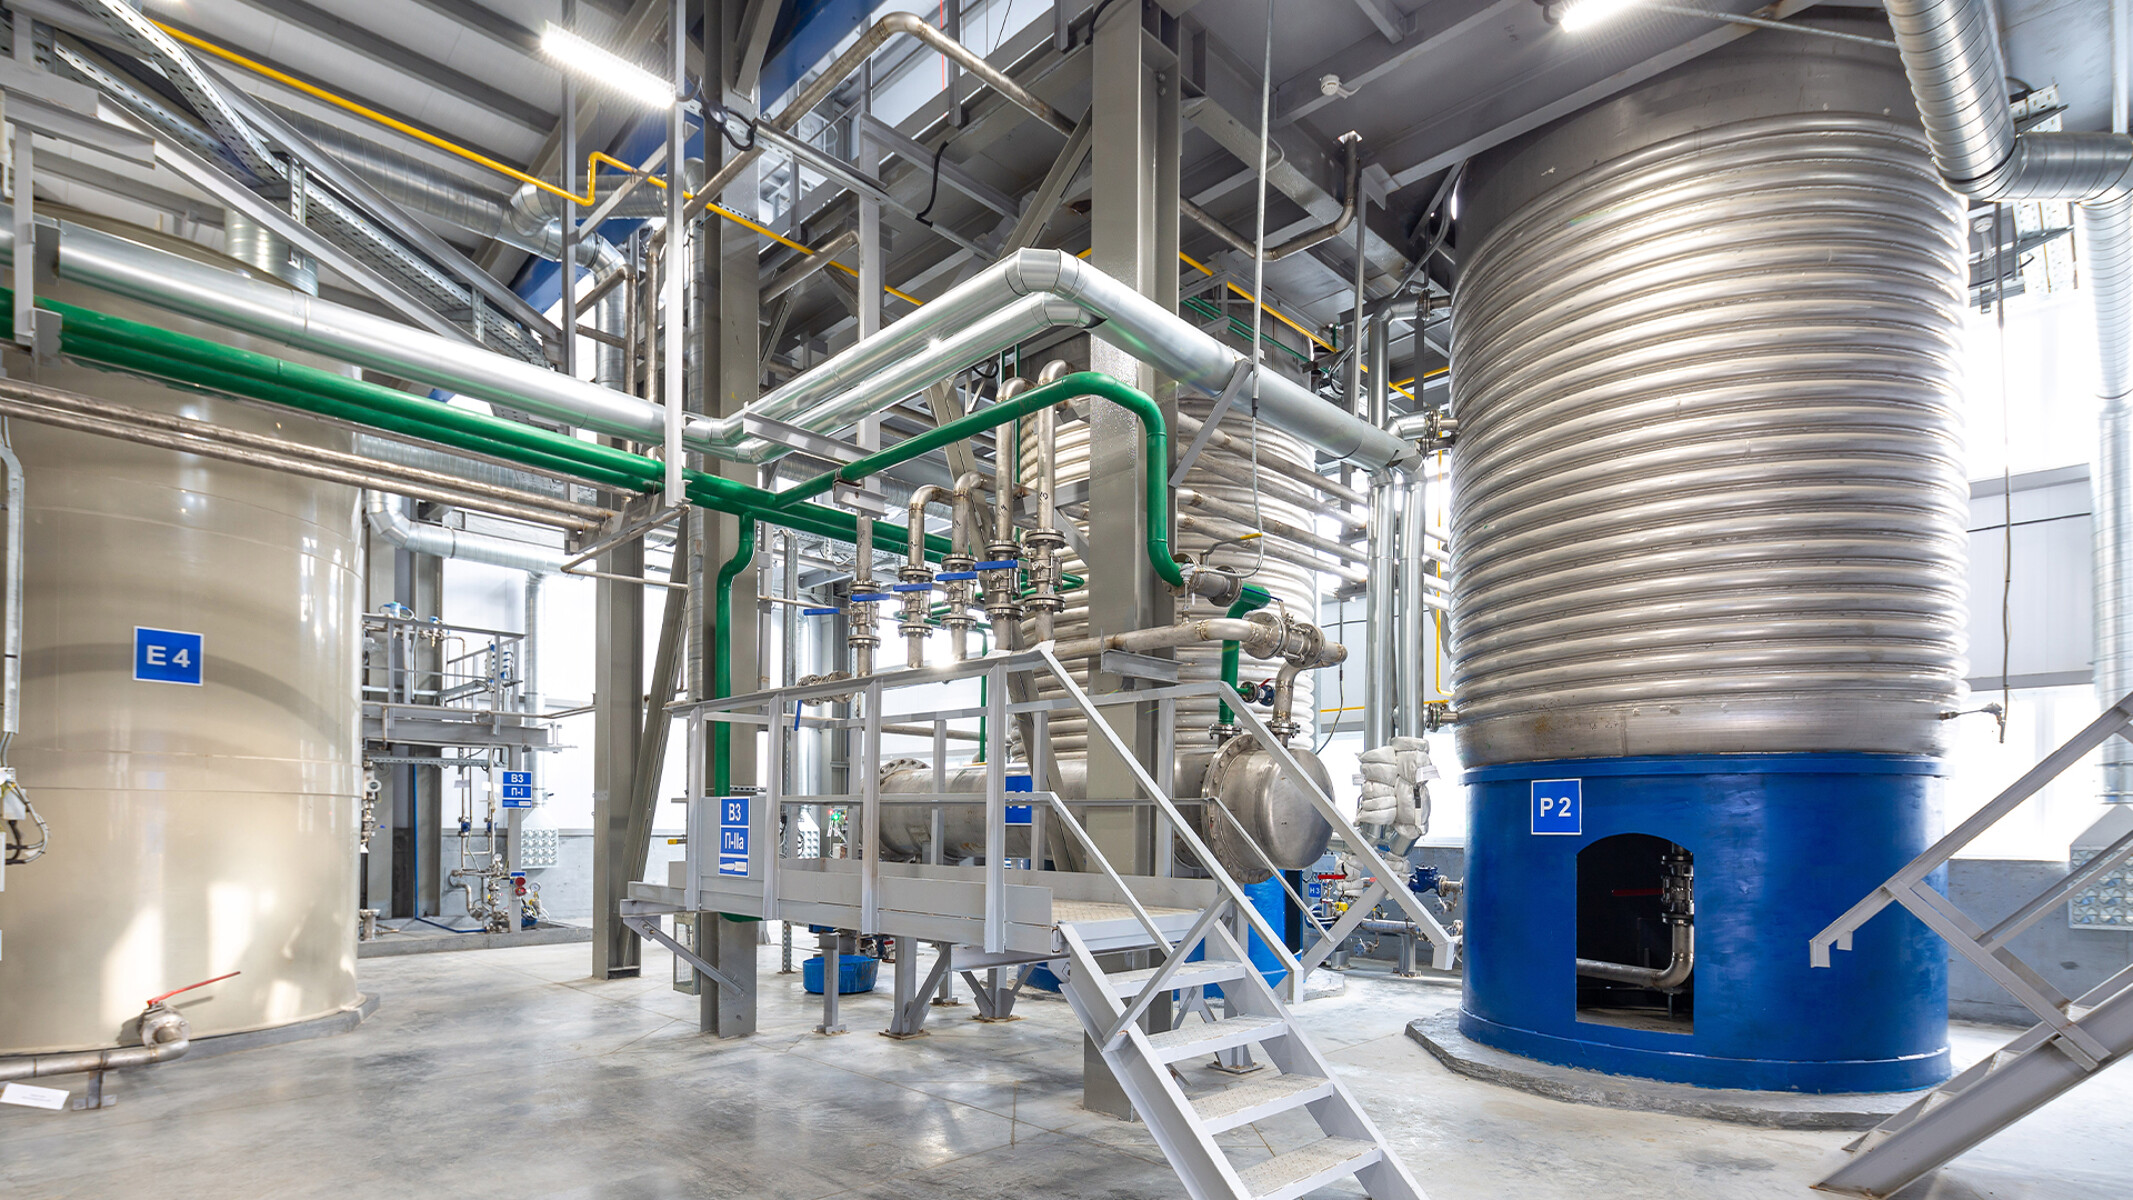 Thiết bị quy mô lớn và hệ thống ống nước âm trần trong cơ sở hóa chất tiêu dùng